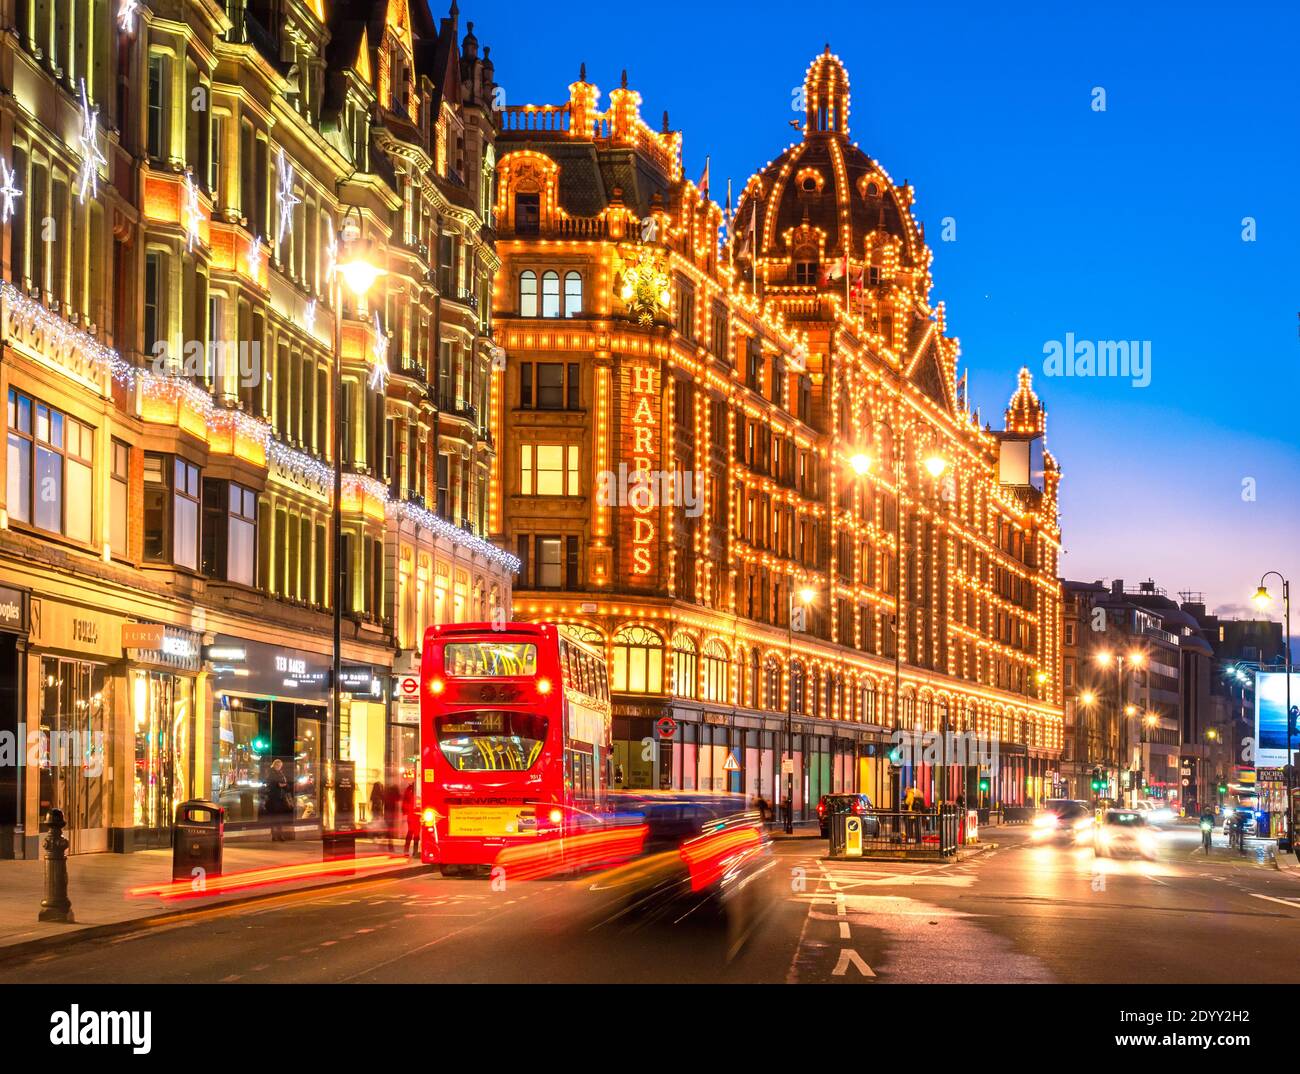 Londra, Inghilterra, Regno Unito - 27 dicembre 2020: Edificio di lusso Harrods a Londra illuminato al tramonto Foto Stock